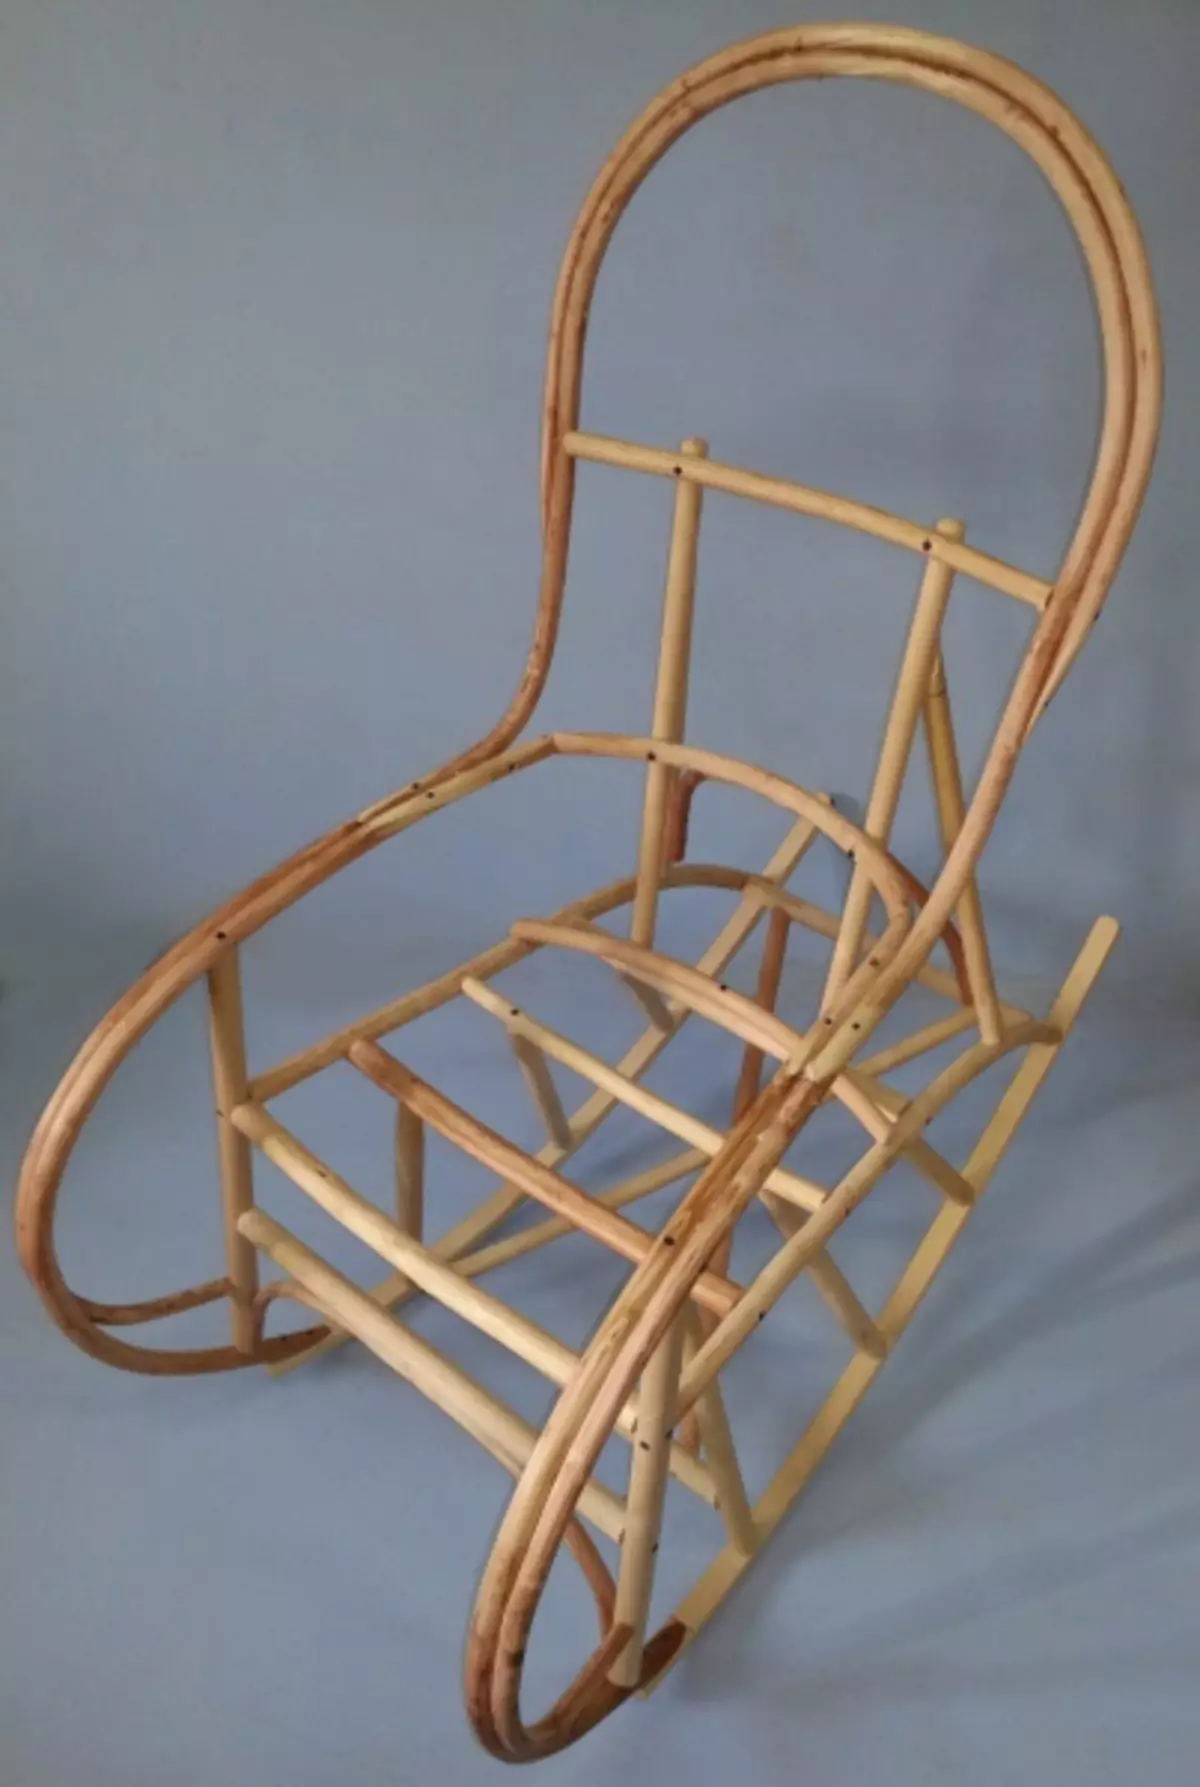 เก้าอี้โยกทำเองจากต้นไม้: ภาพถ่ายภาพวาดและการทำงาน